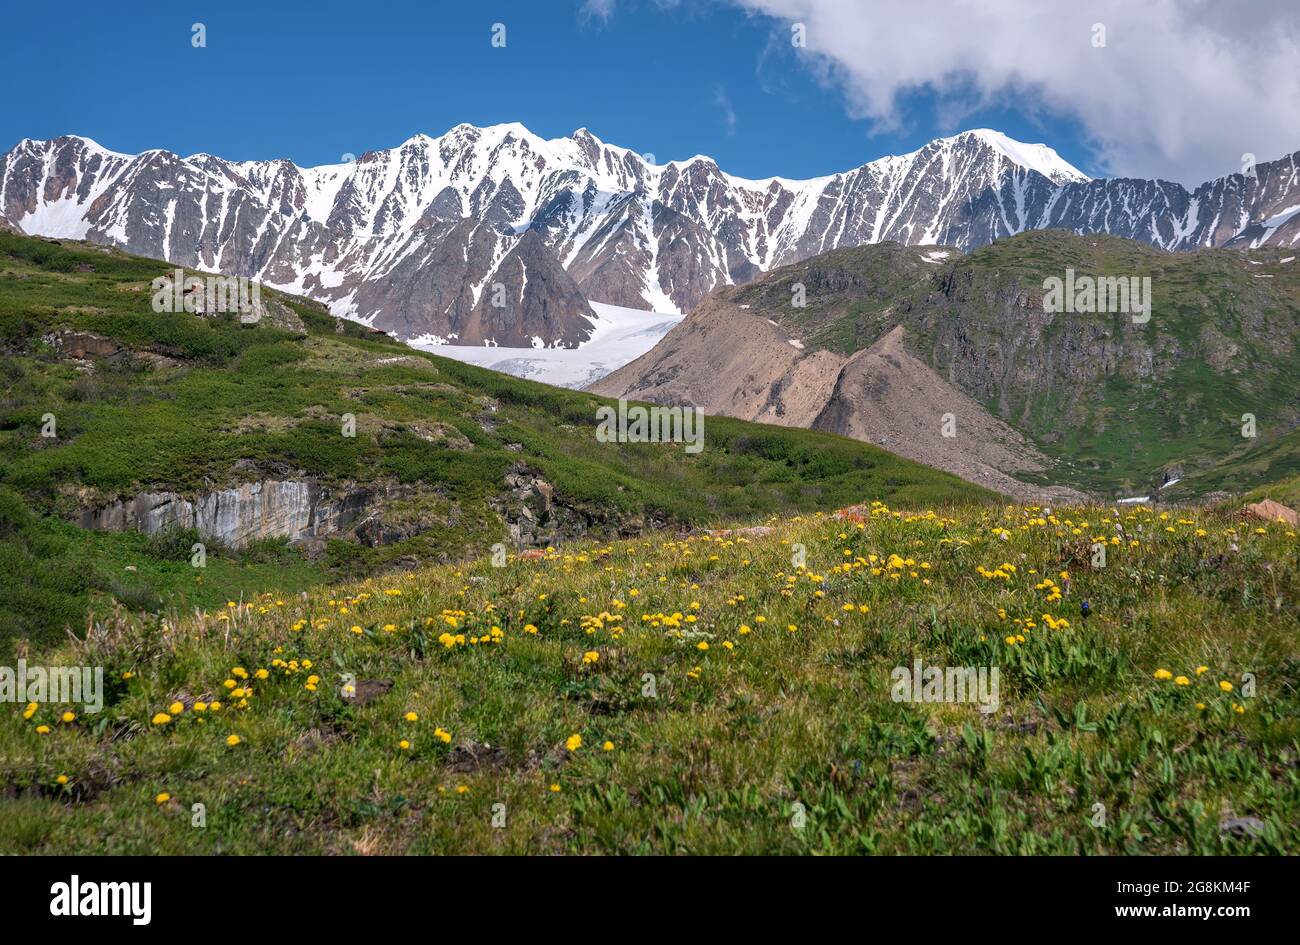 Vue incroyable avec des fleurs sauvages jaune vif sur un pré vert et des épaisses de bouleau nain sur fond de montagnes enneigées, de glacier et de bleu s. Banque D'Images